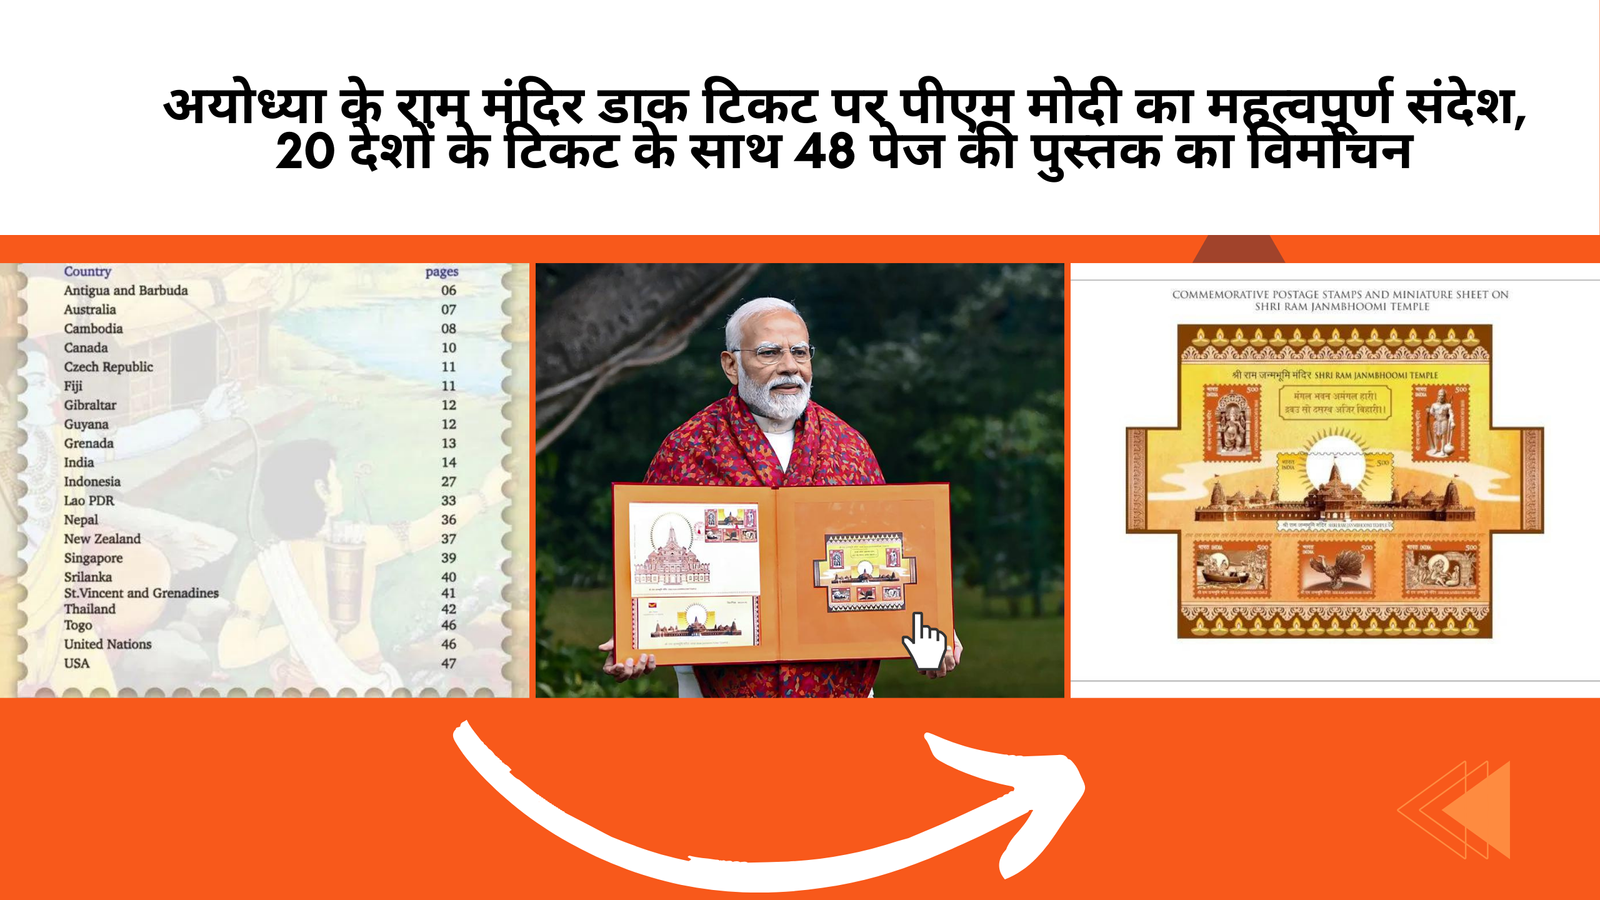 अयोध्या के राम मंदिर डाक टिकट पर पीएम मोदी का महत्वपूर्ण संदेश, 20 देशों के टिकट के साथ 48 पेज की पुस्तक का विमोचन |PM Modi Releases Postage Stamp & 48 page book with 20 country ticket